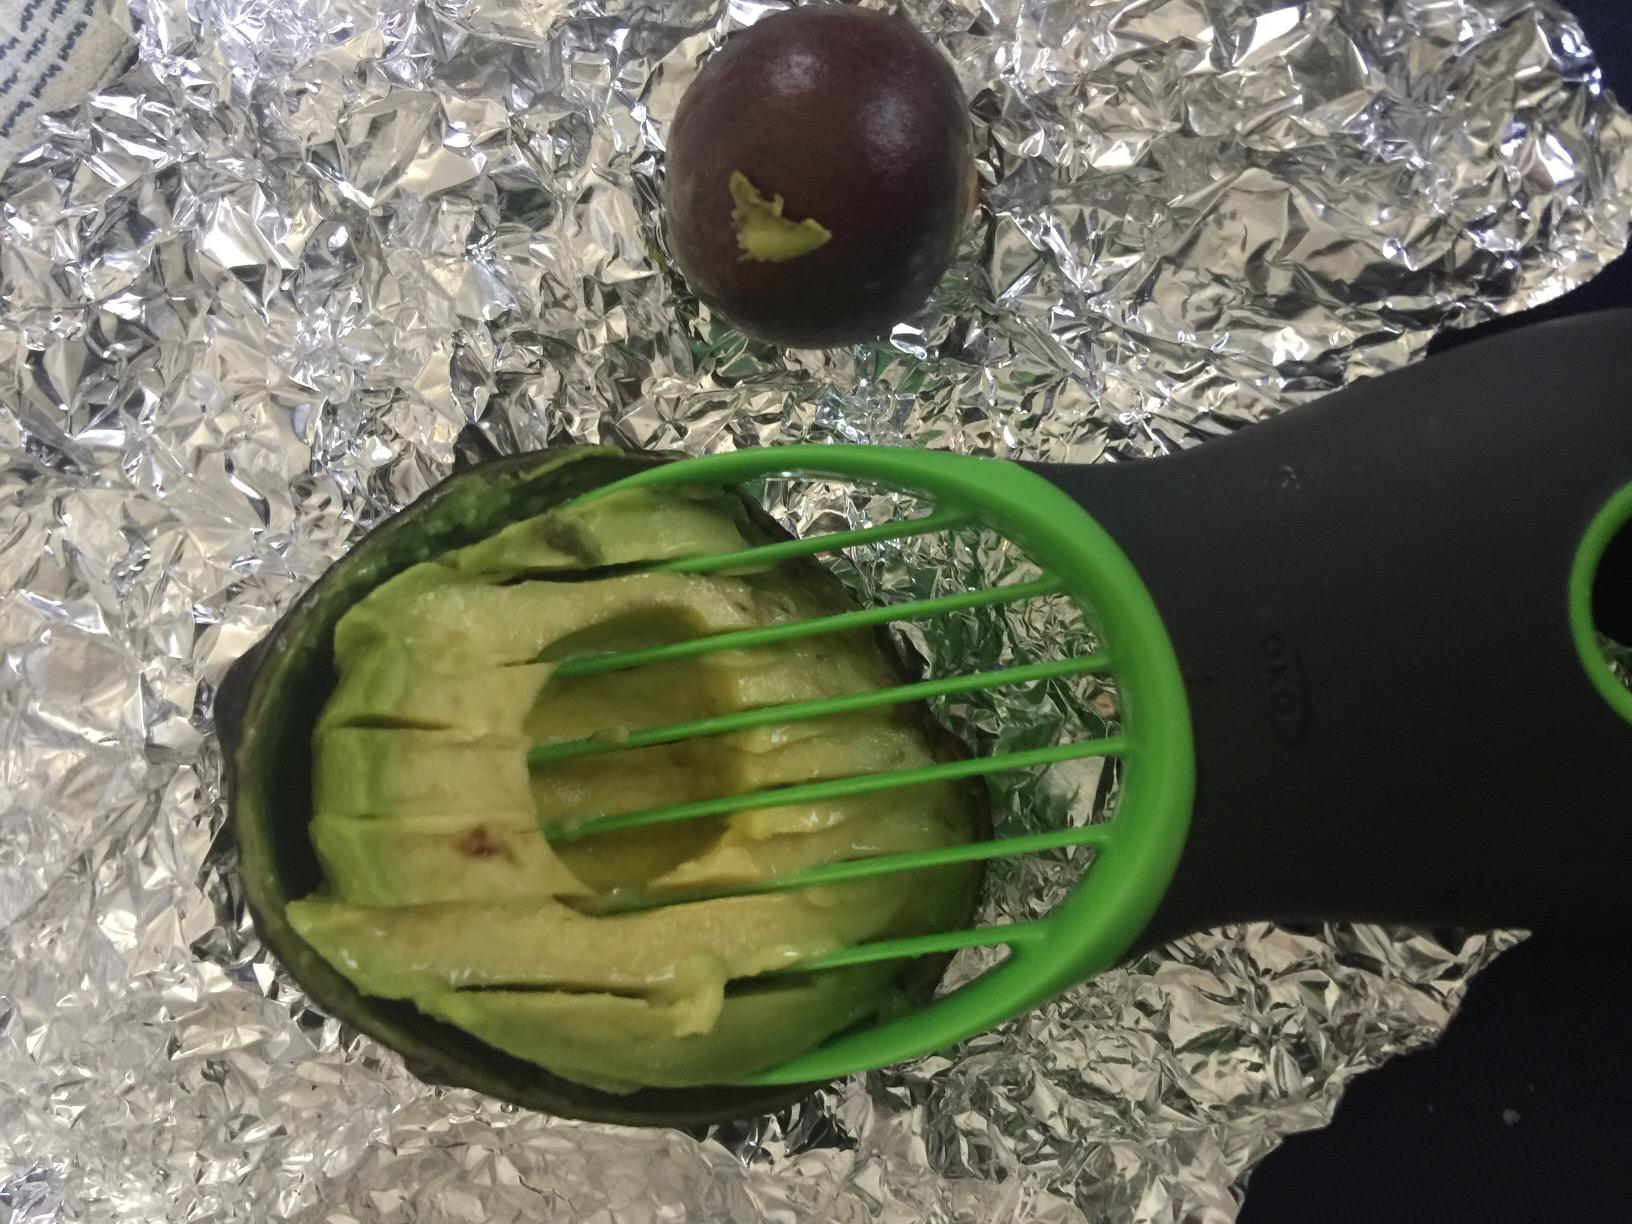 3-in-1 Avocado Slicer - Green #ns23 _mkpt